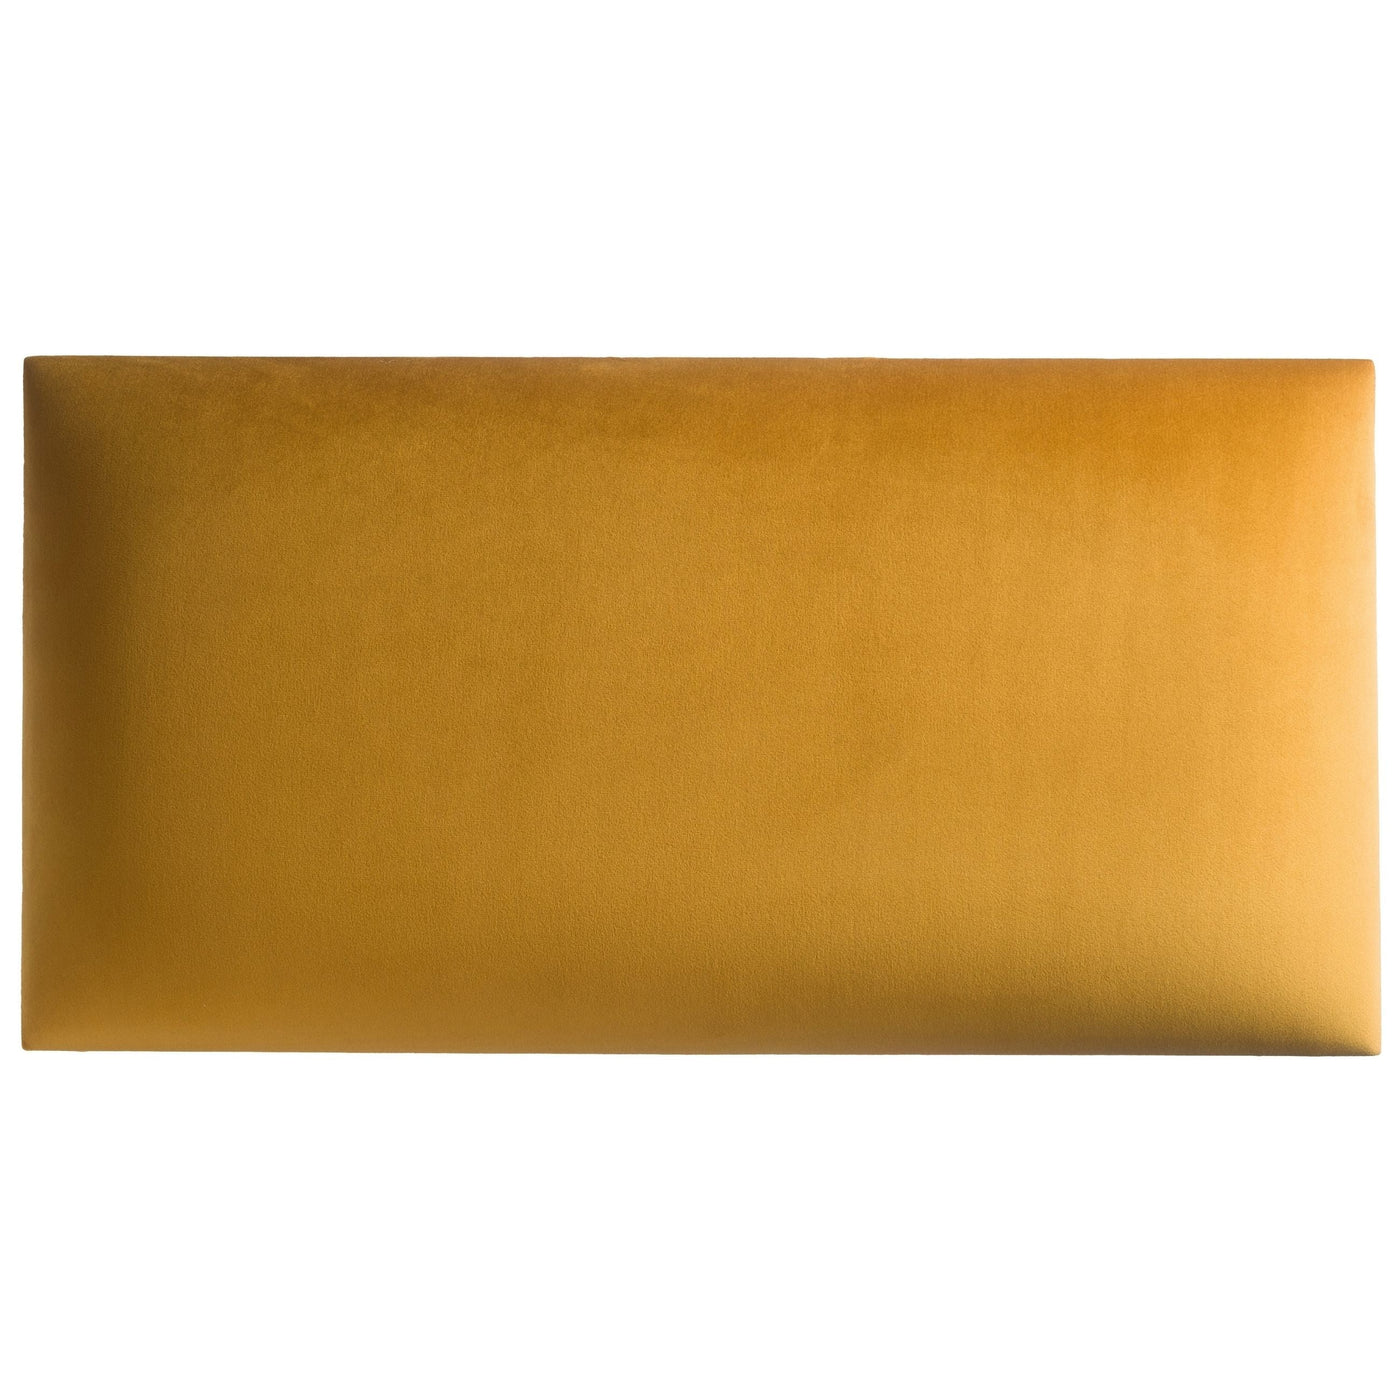 Wandkissen aus Samt Stoff der Rivera Kollektion in der Größe 60x30 mit der Farbe Gold-Gelb RV41